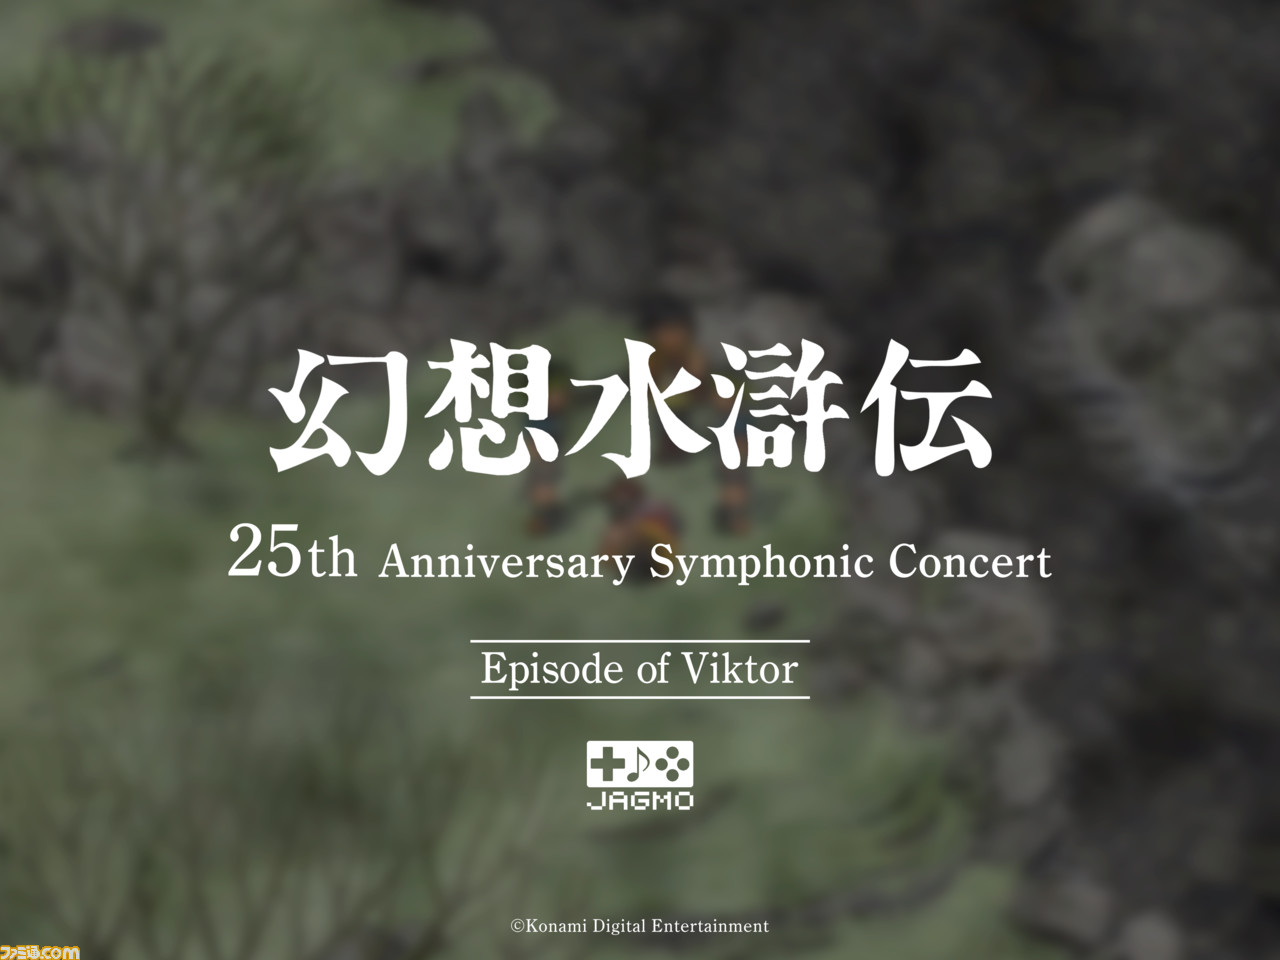 幻想水滸伝』シリーズのフルオーケストラコンサートツアーがオンライン